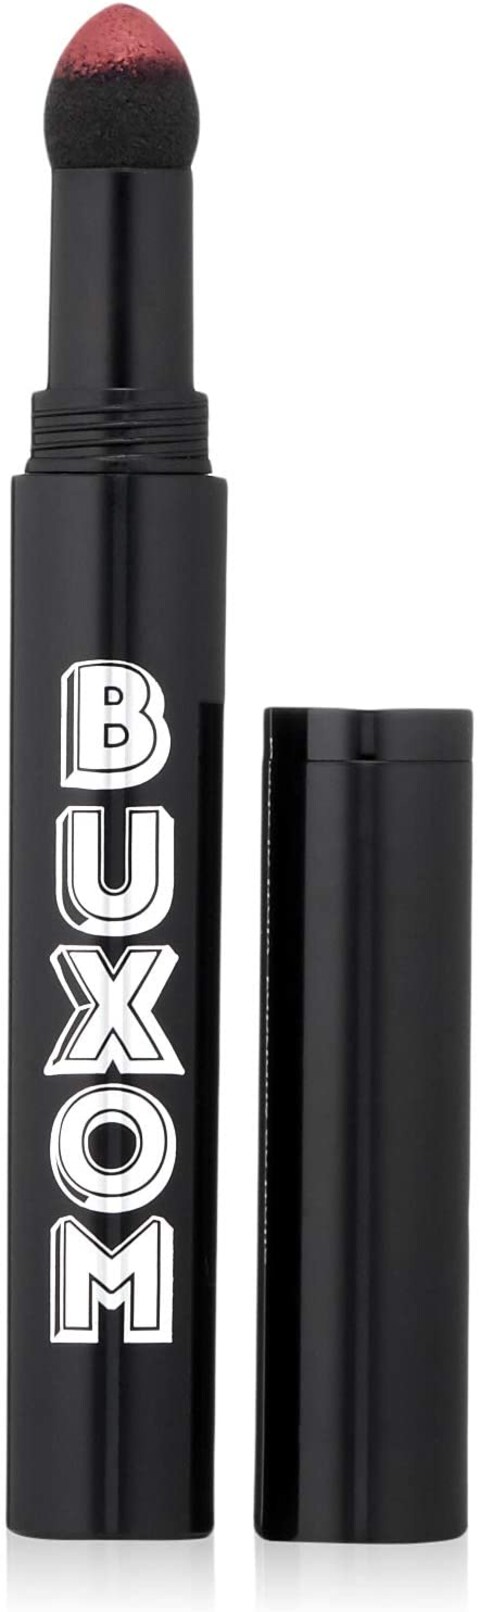 Buxom Pillow Pout Creamy Plumping Lip Powder - Seduce Me For Women 0.03 Oz Lipstick